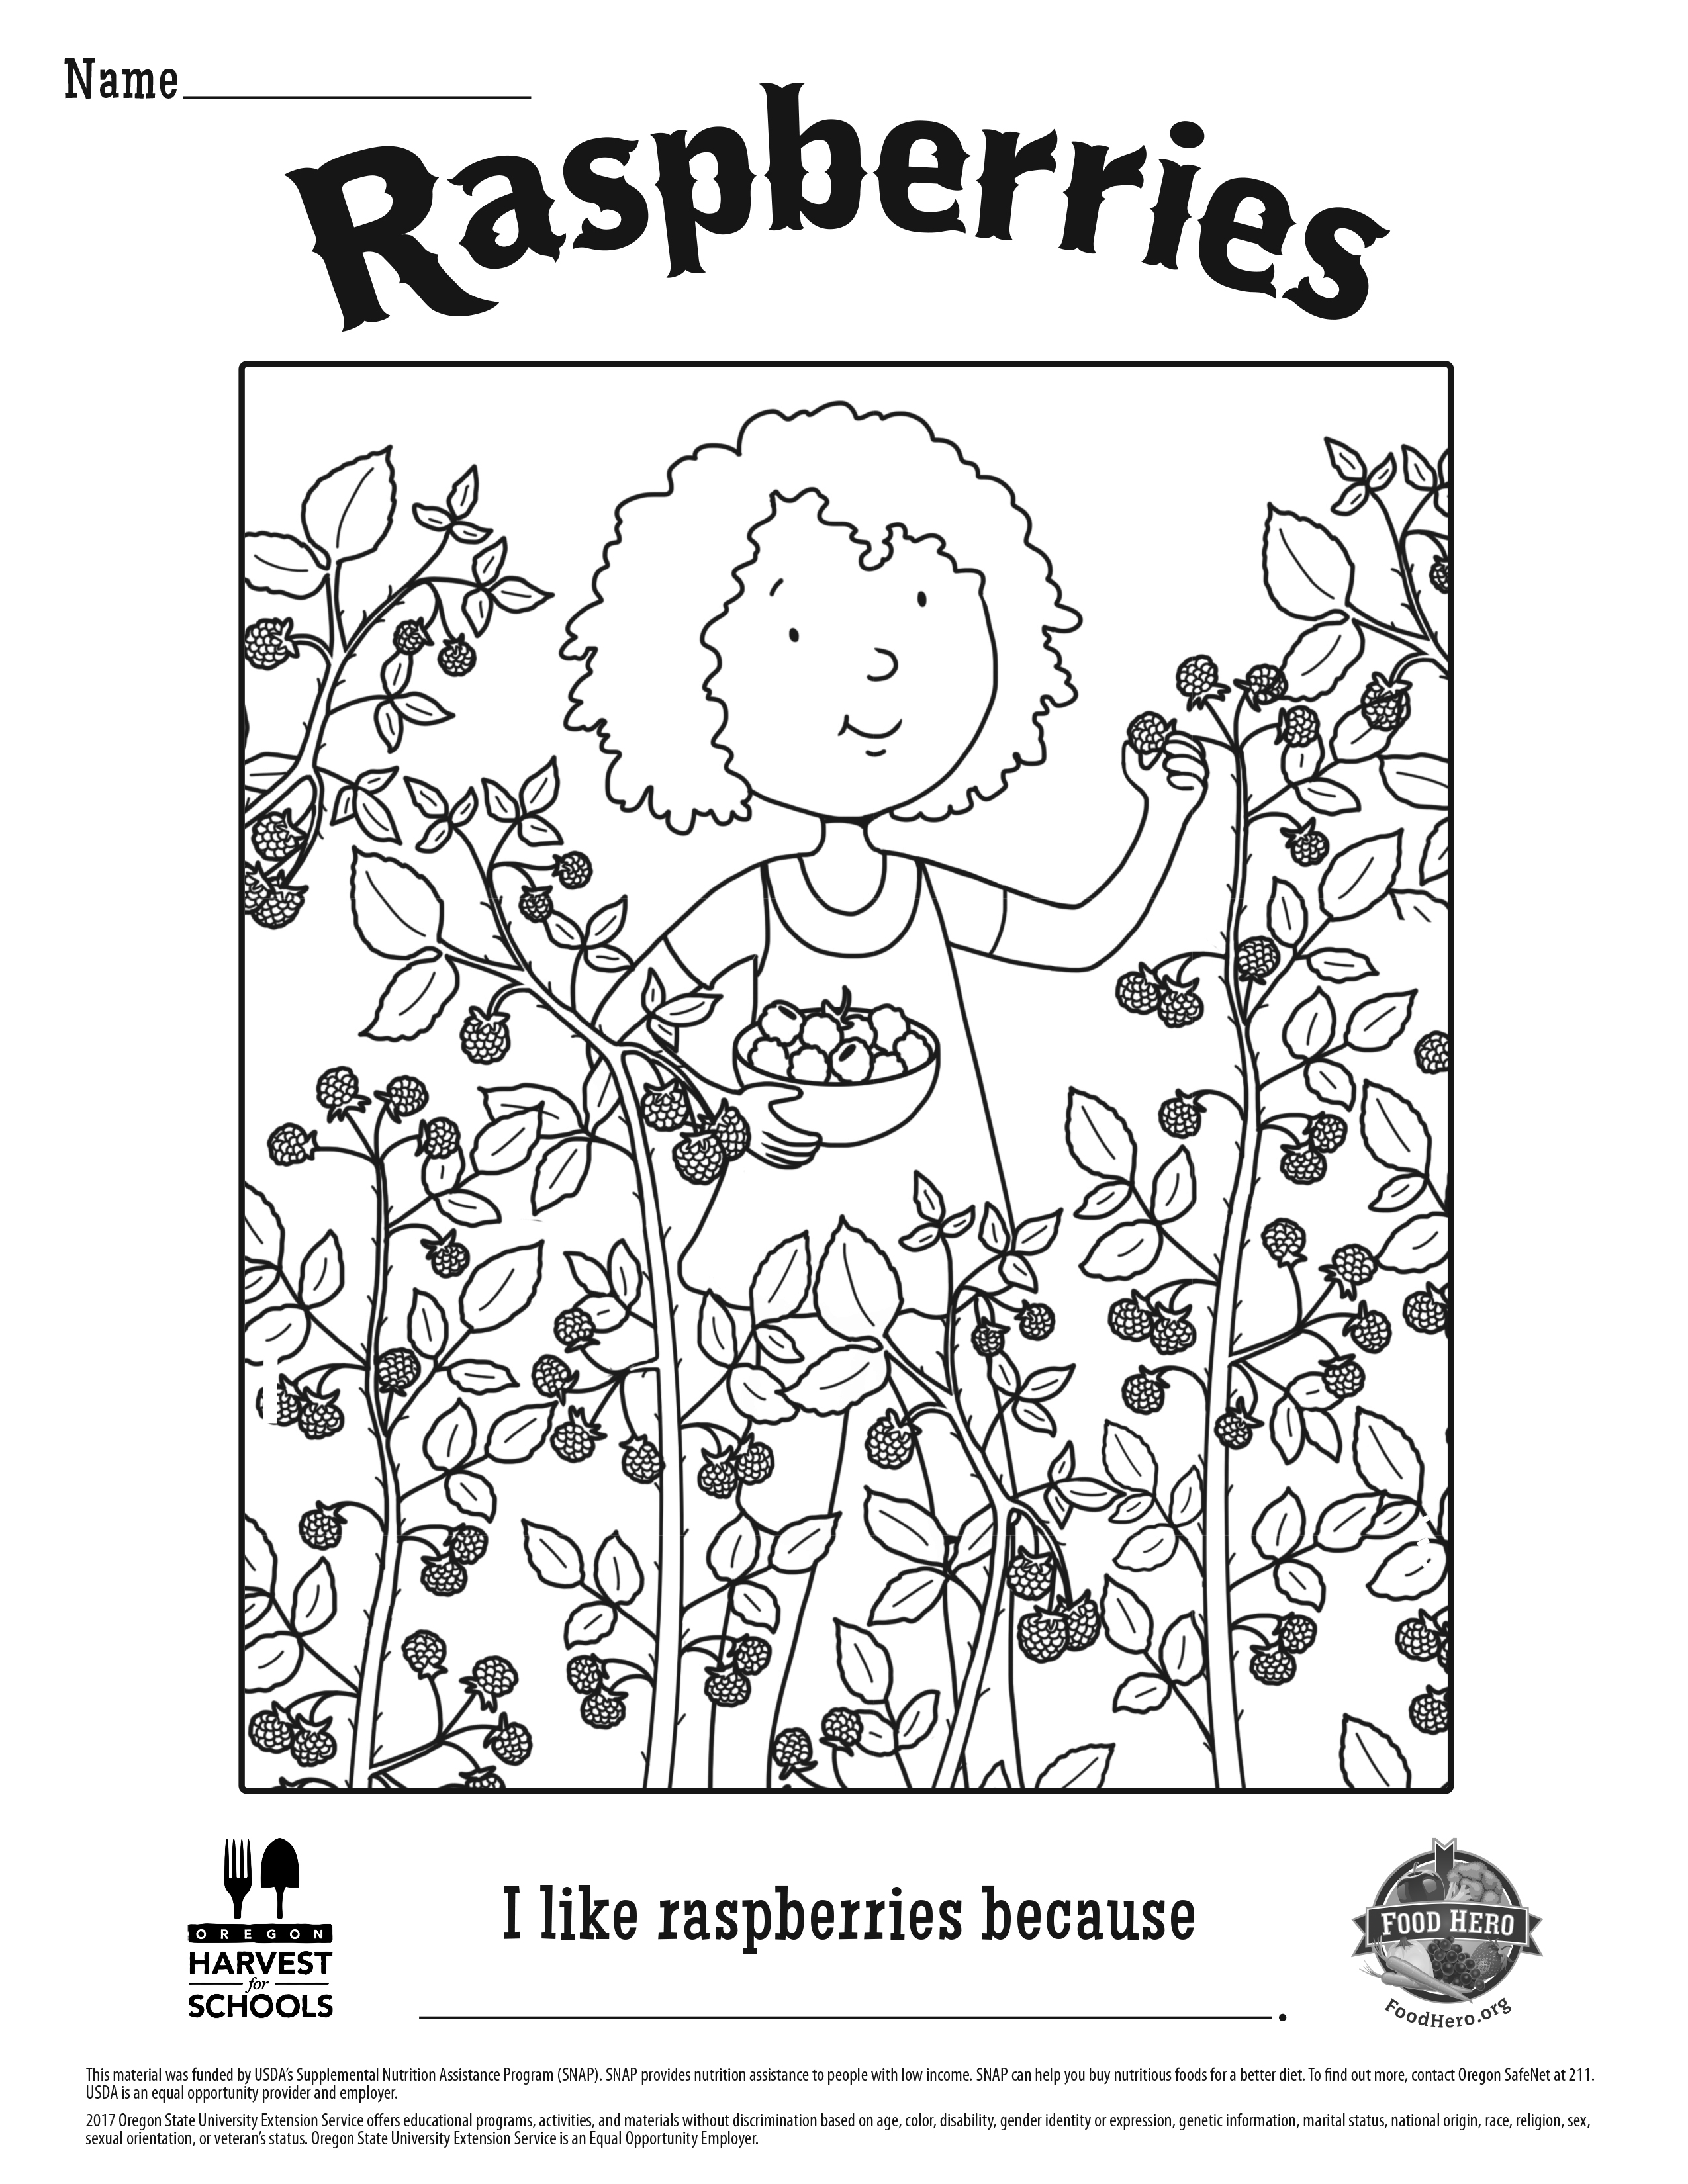 Raspberries | Food Hero